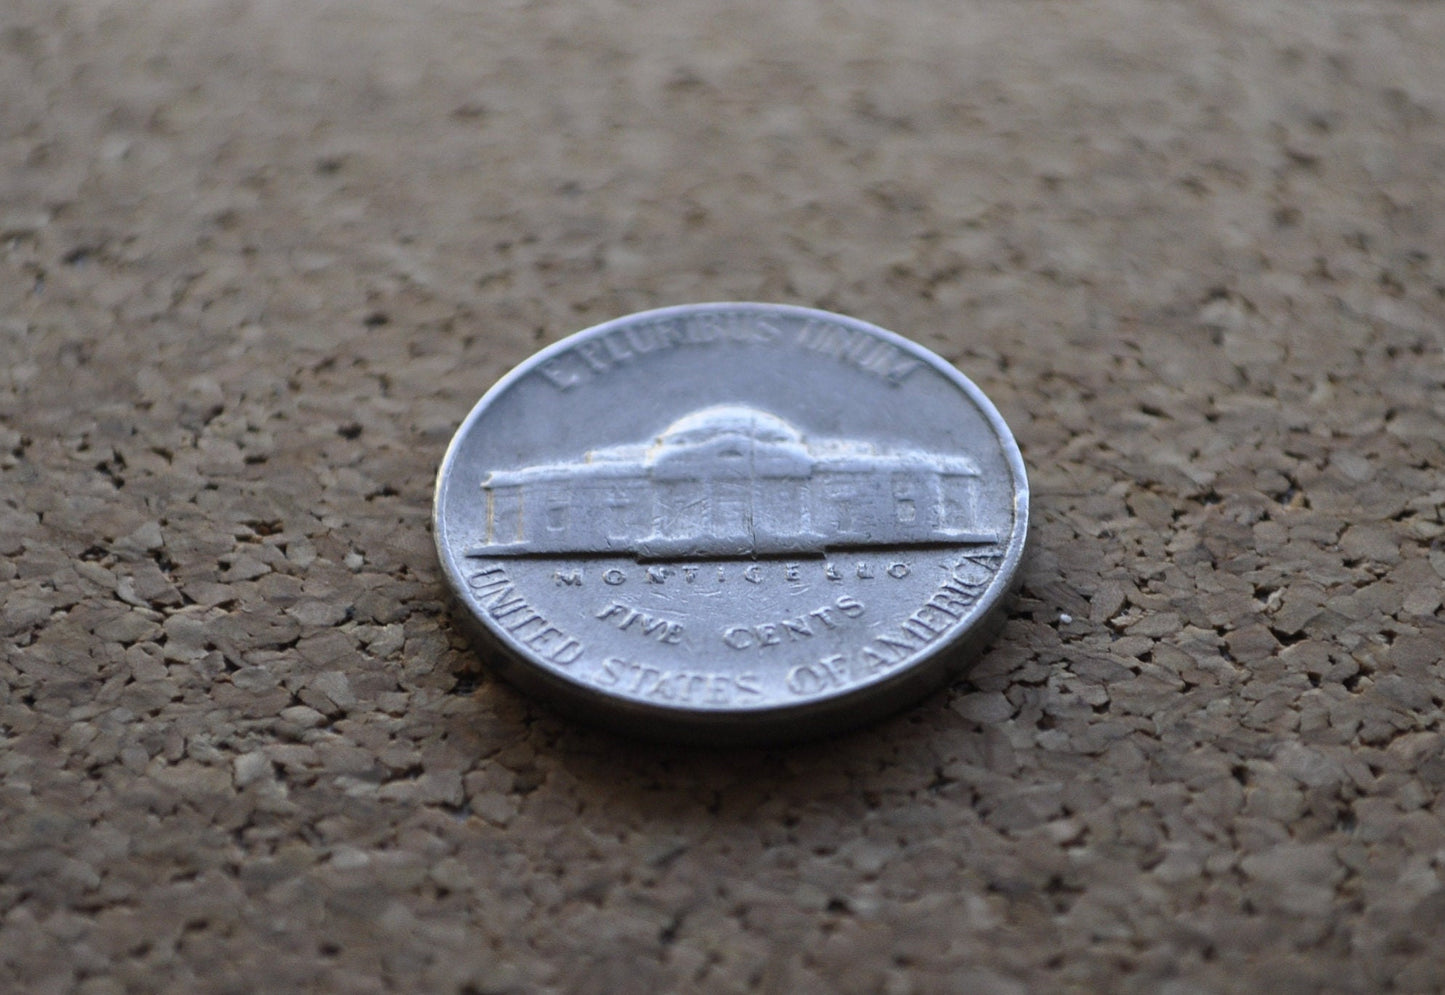 1965 Jefferson Nickel - Philadelphia Mint